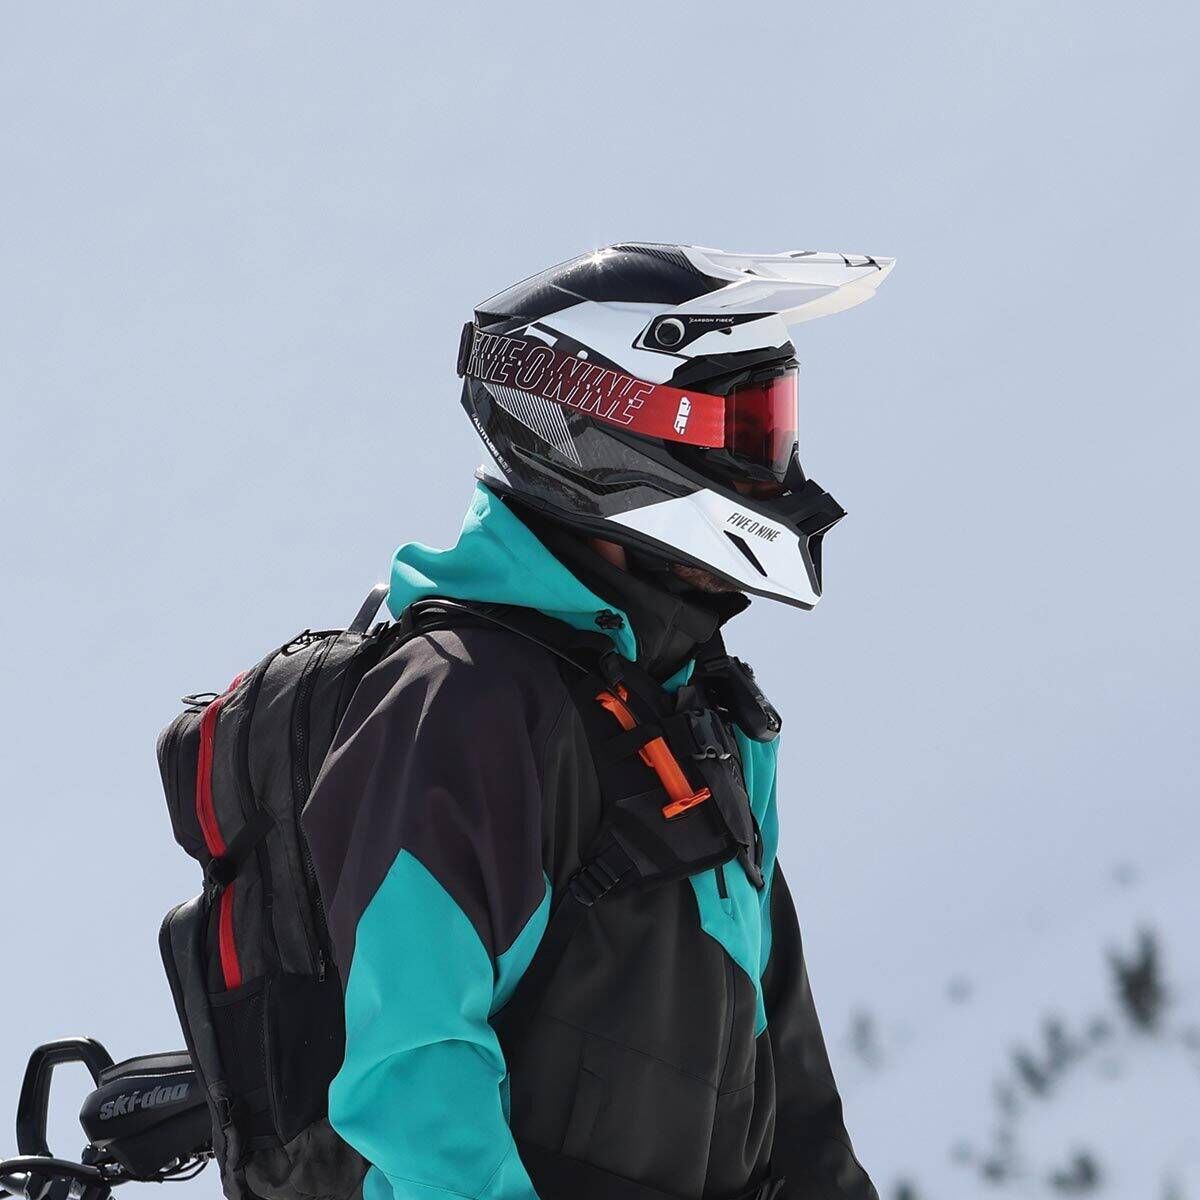 509 Altitude 2.0 Carbon Fiber 3K Helmet - Hi-Flow